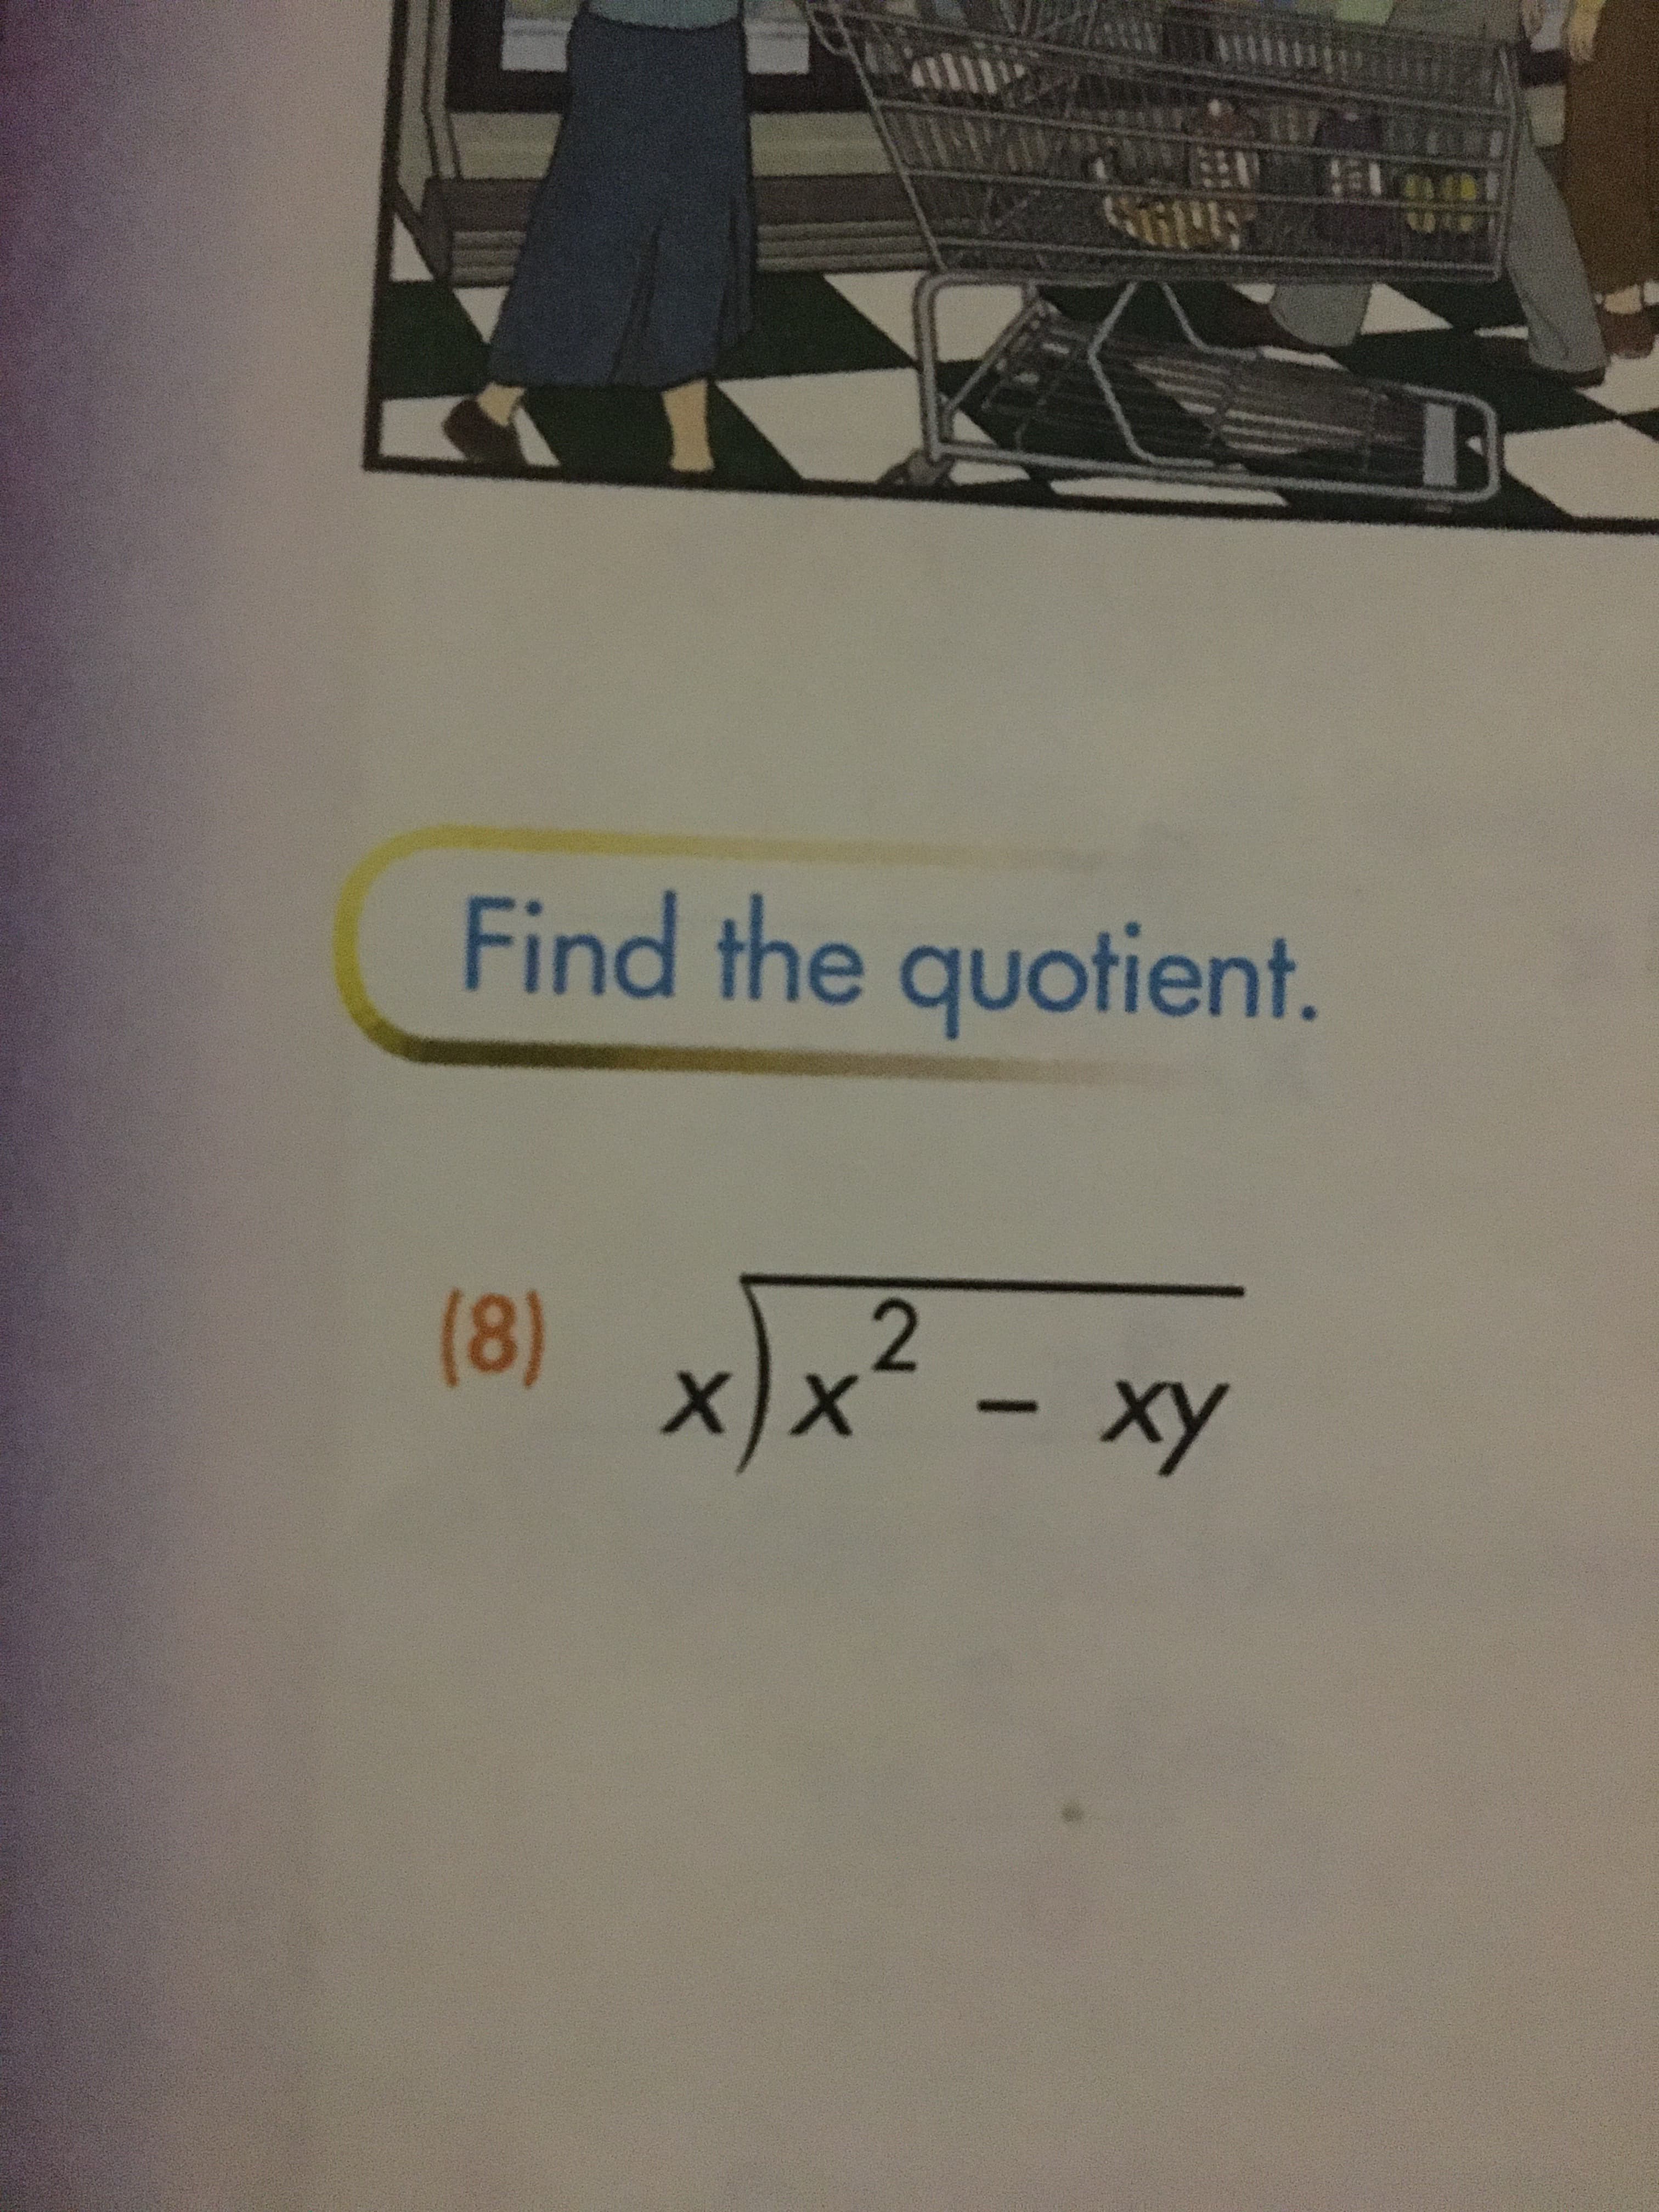 Find the quotient.
(8) x)x? - xy
х)x
ху
